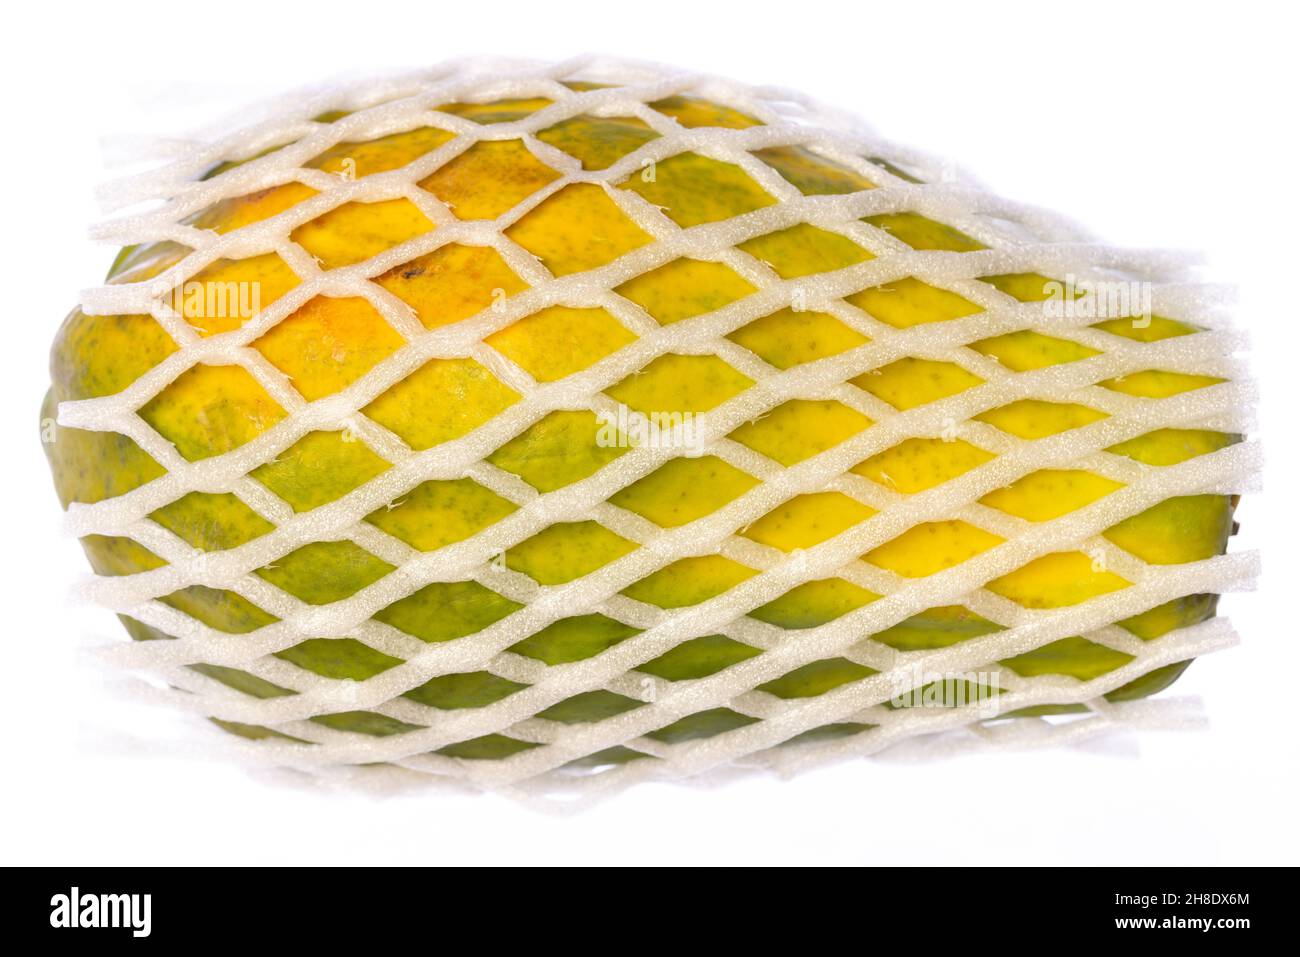 papaya entera intacta en una red de embalaje de plástico aislada sobre fondo blanco Foto de stock